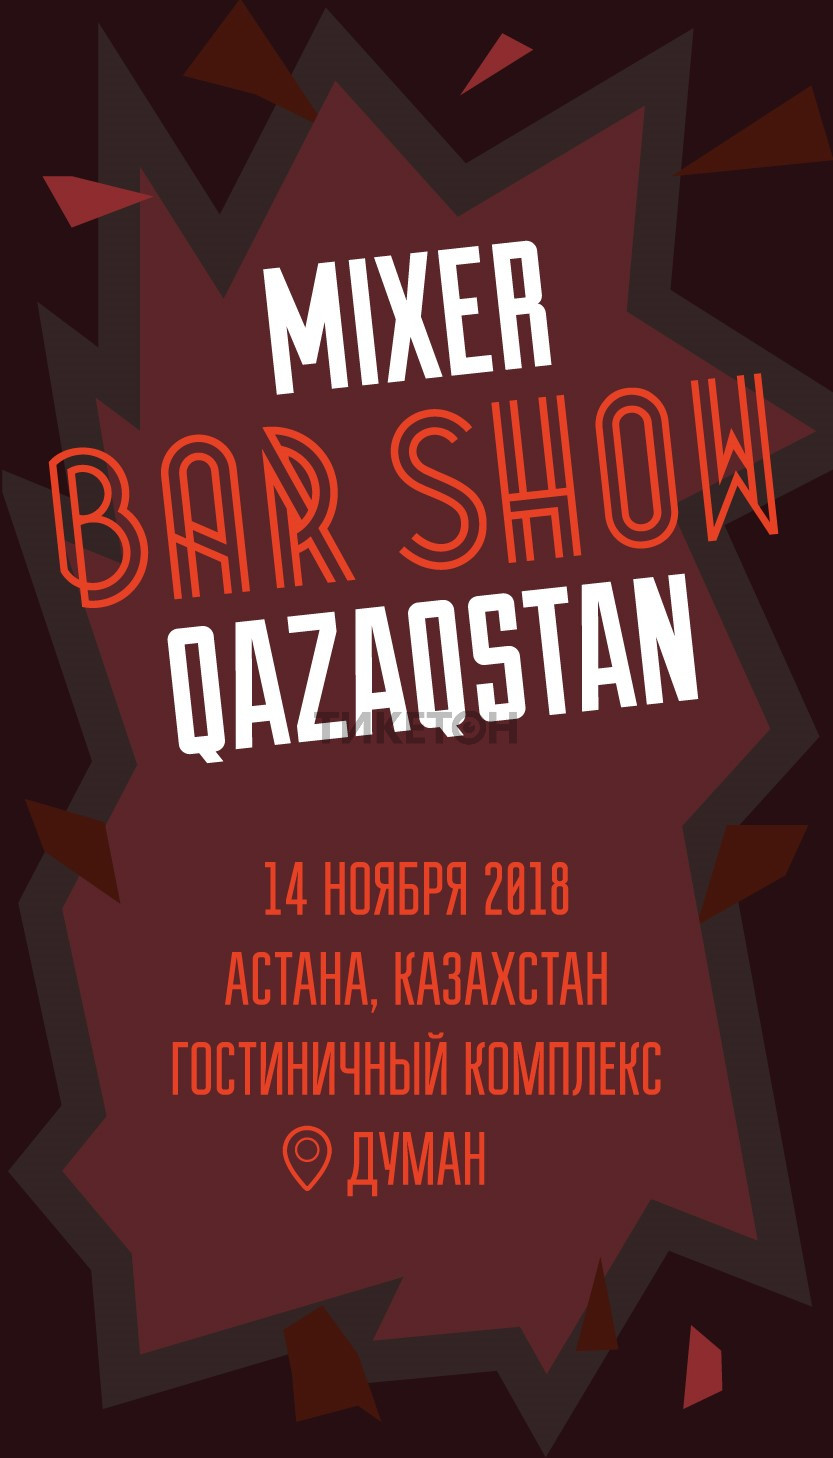 Mixer Bar Show